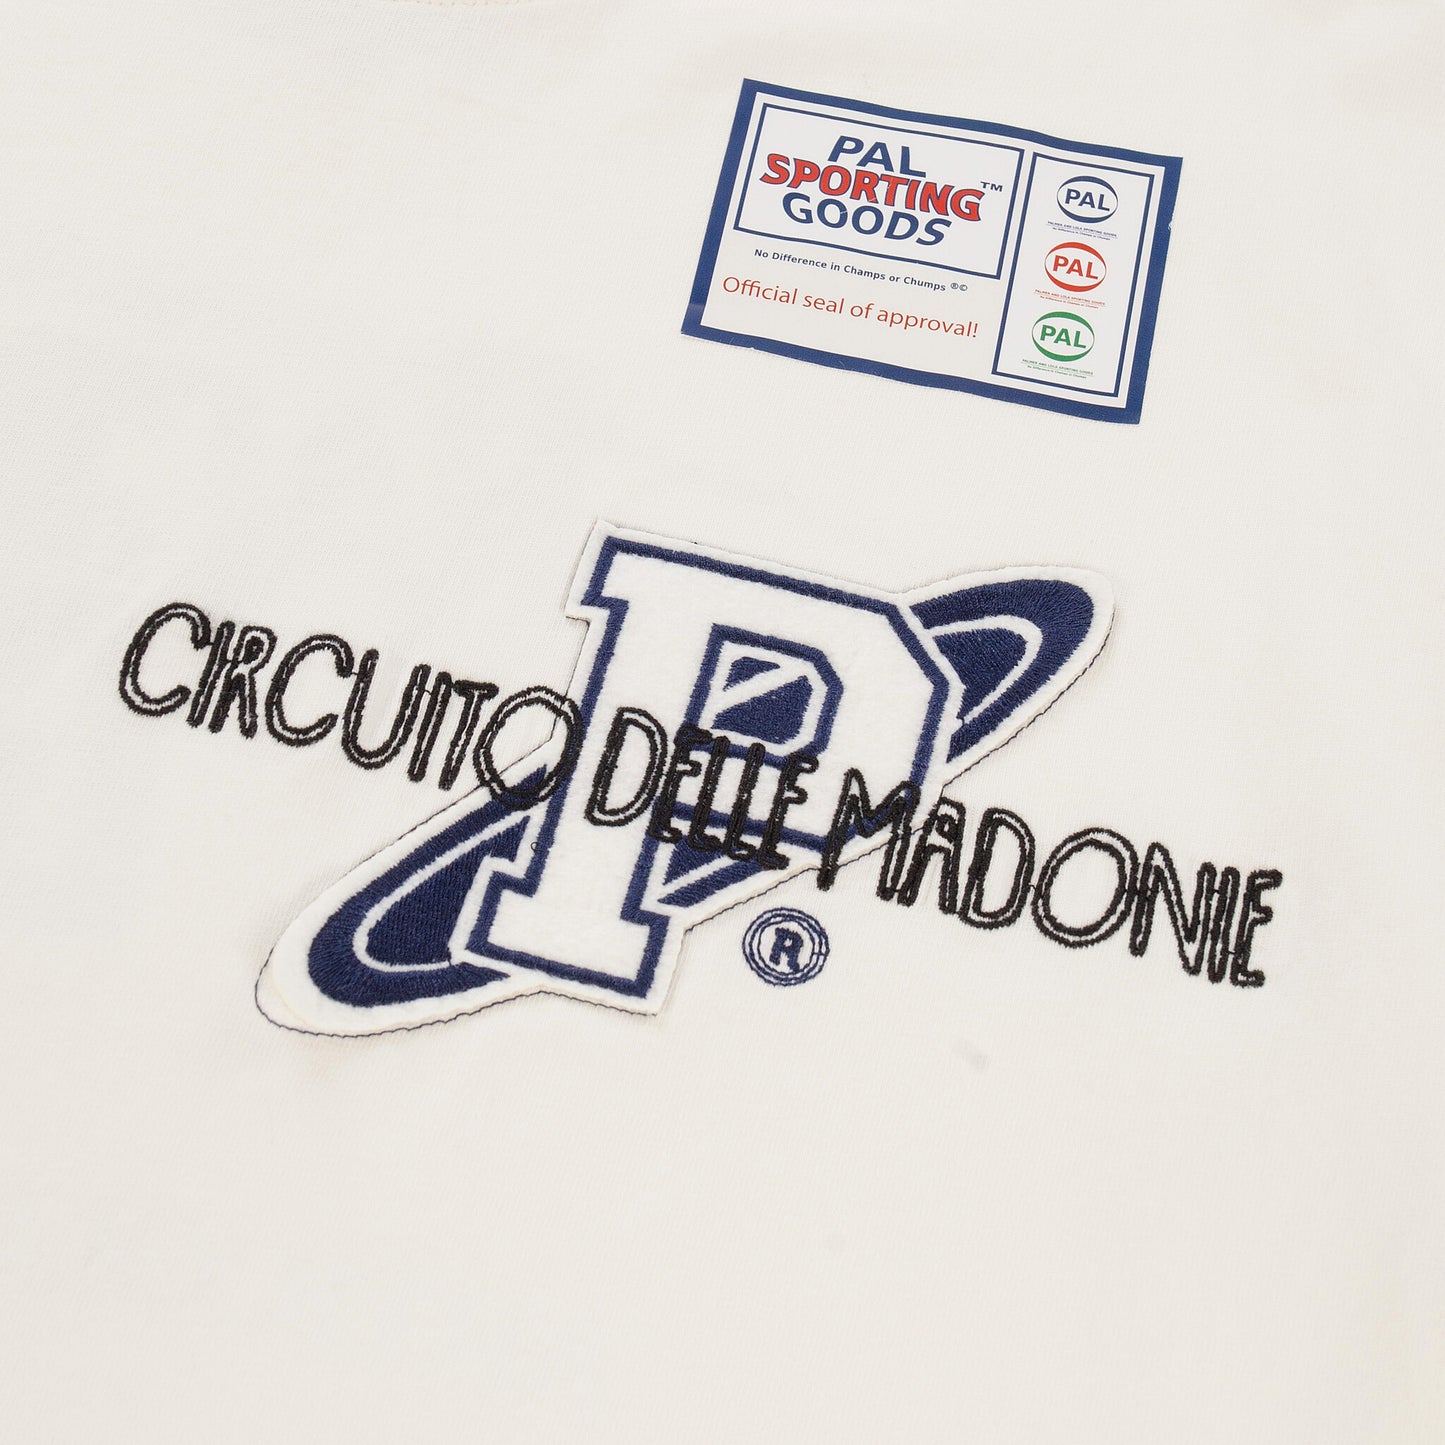 Racing Group T-shirt Marshmellow